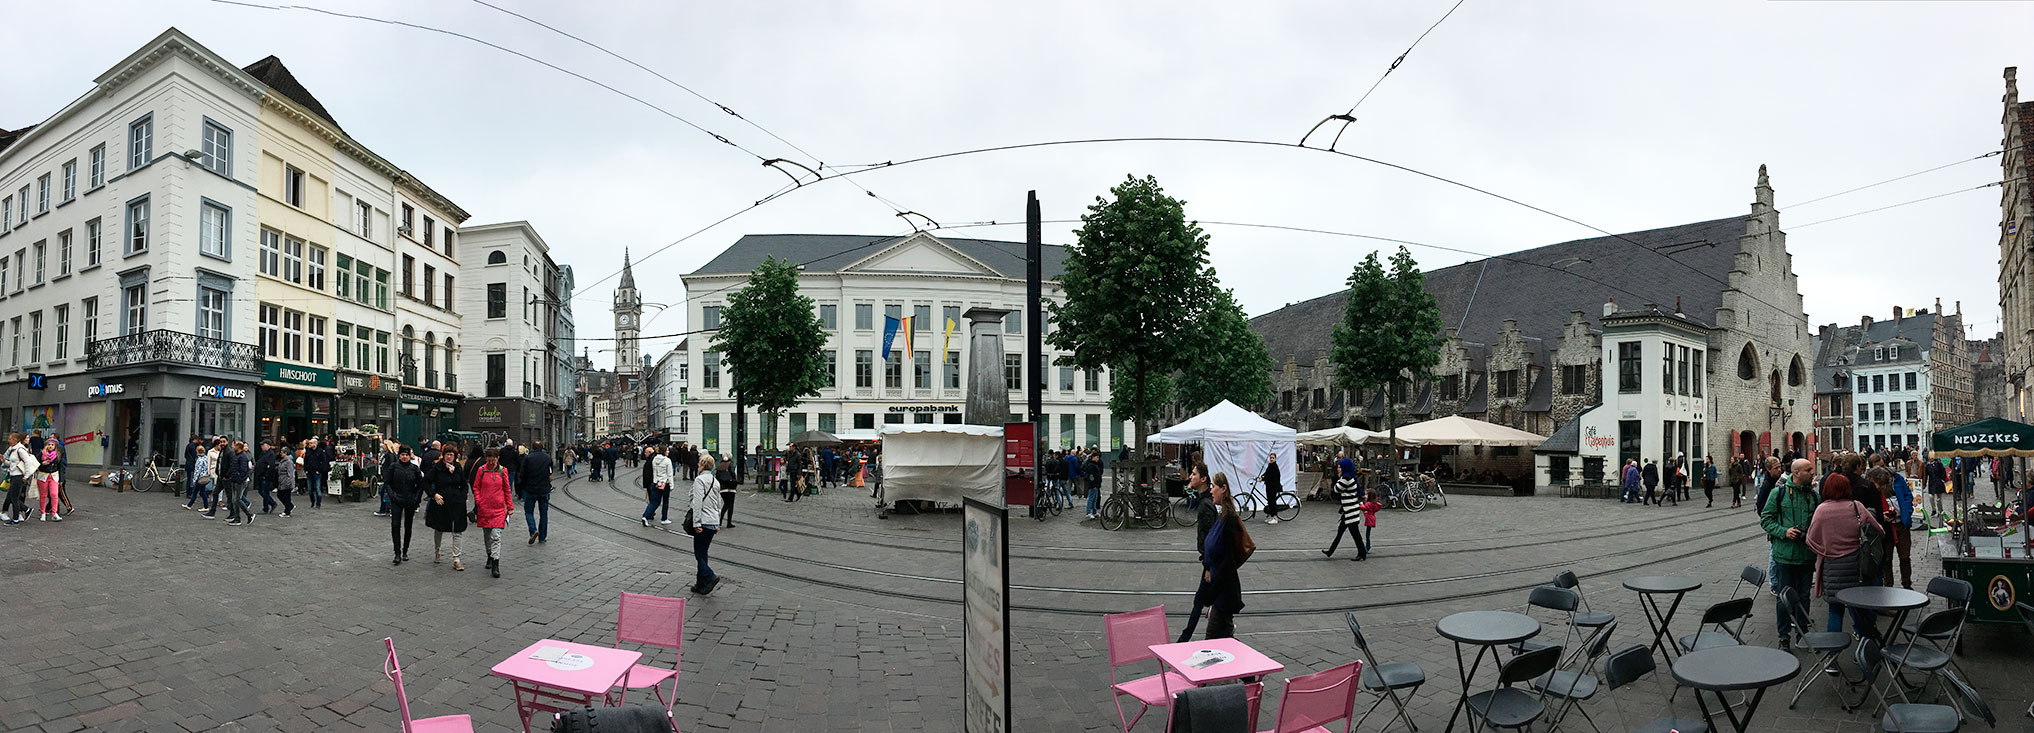 Старая рыночная площадь